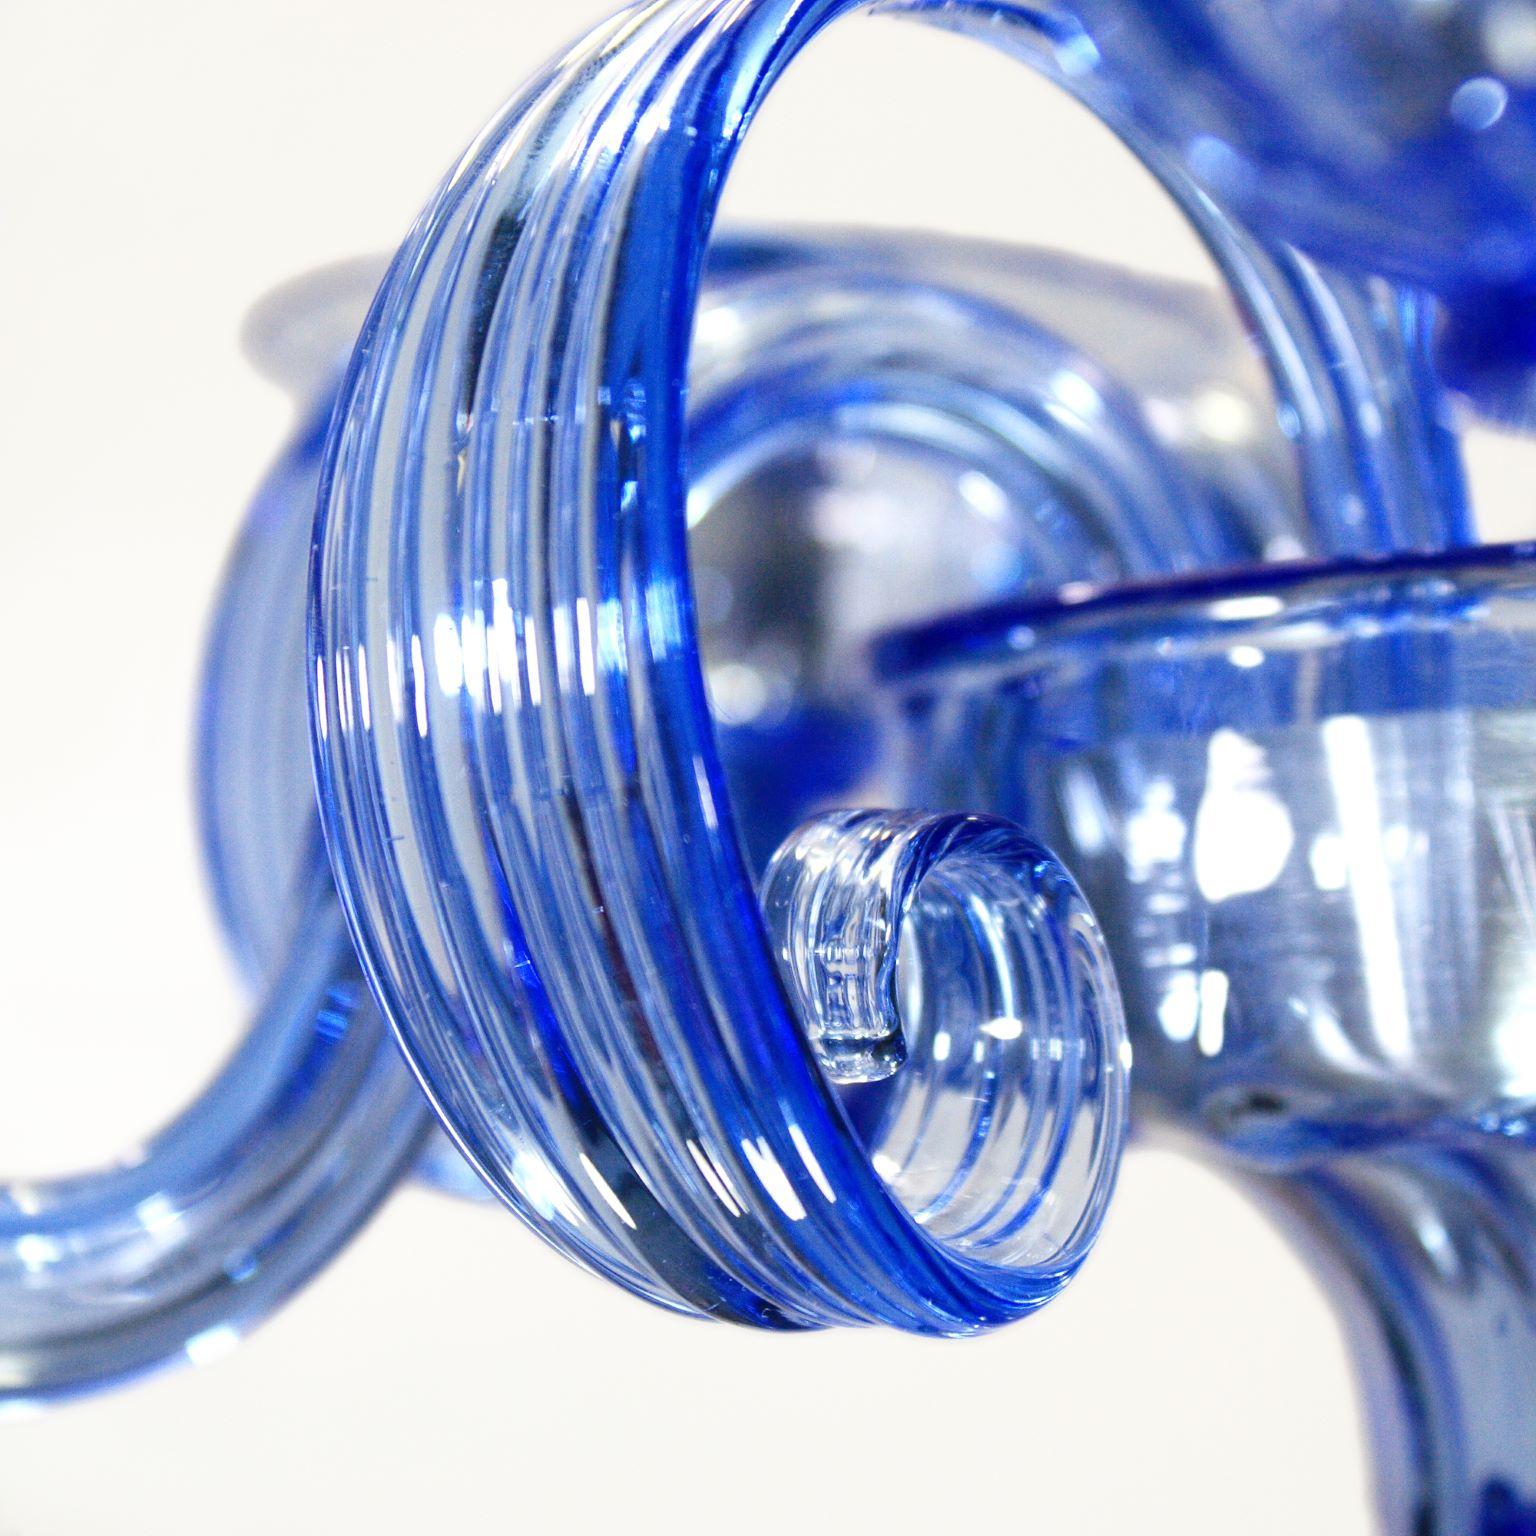 Capriccio Kronleuchter, 5 Lichter, blaues Kunstglas, mit geschwungenen Ornamenten von Multiforme.
Es ist von der klassischen venezianischen Tradition inspiriert und zeichnet sich durch eine zentrale Säule aus, in der zahlreiche 